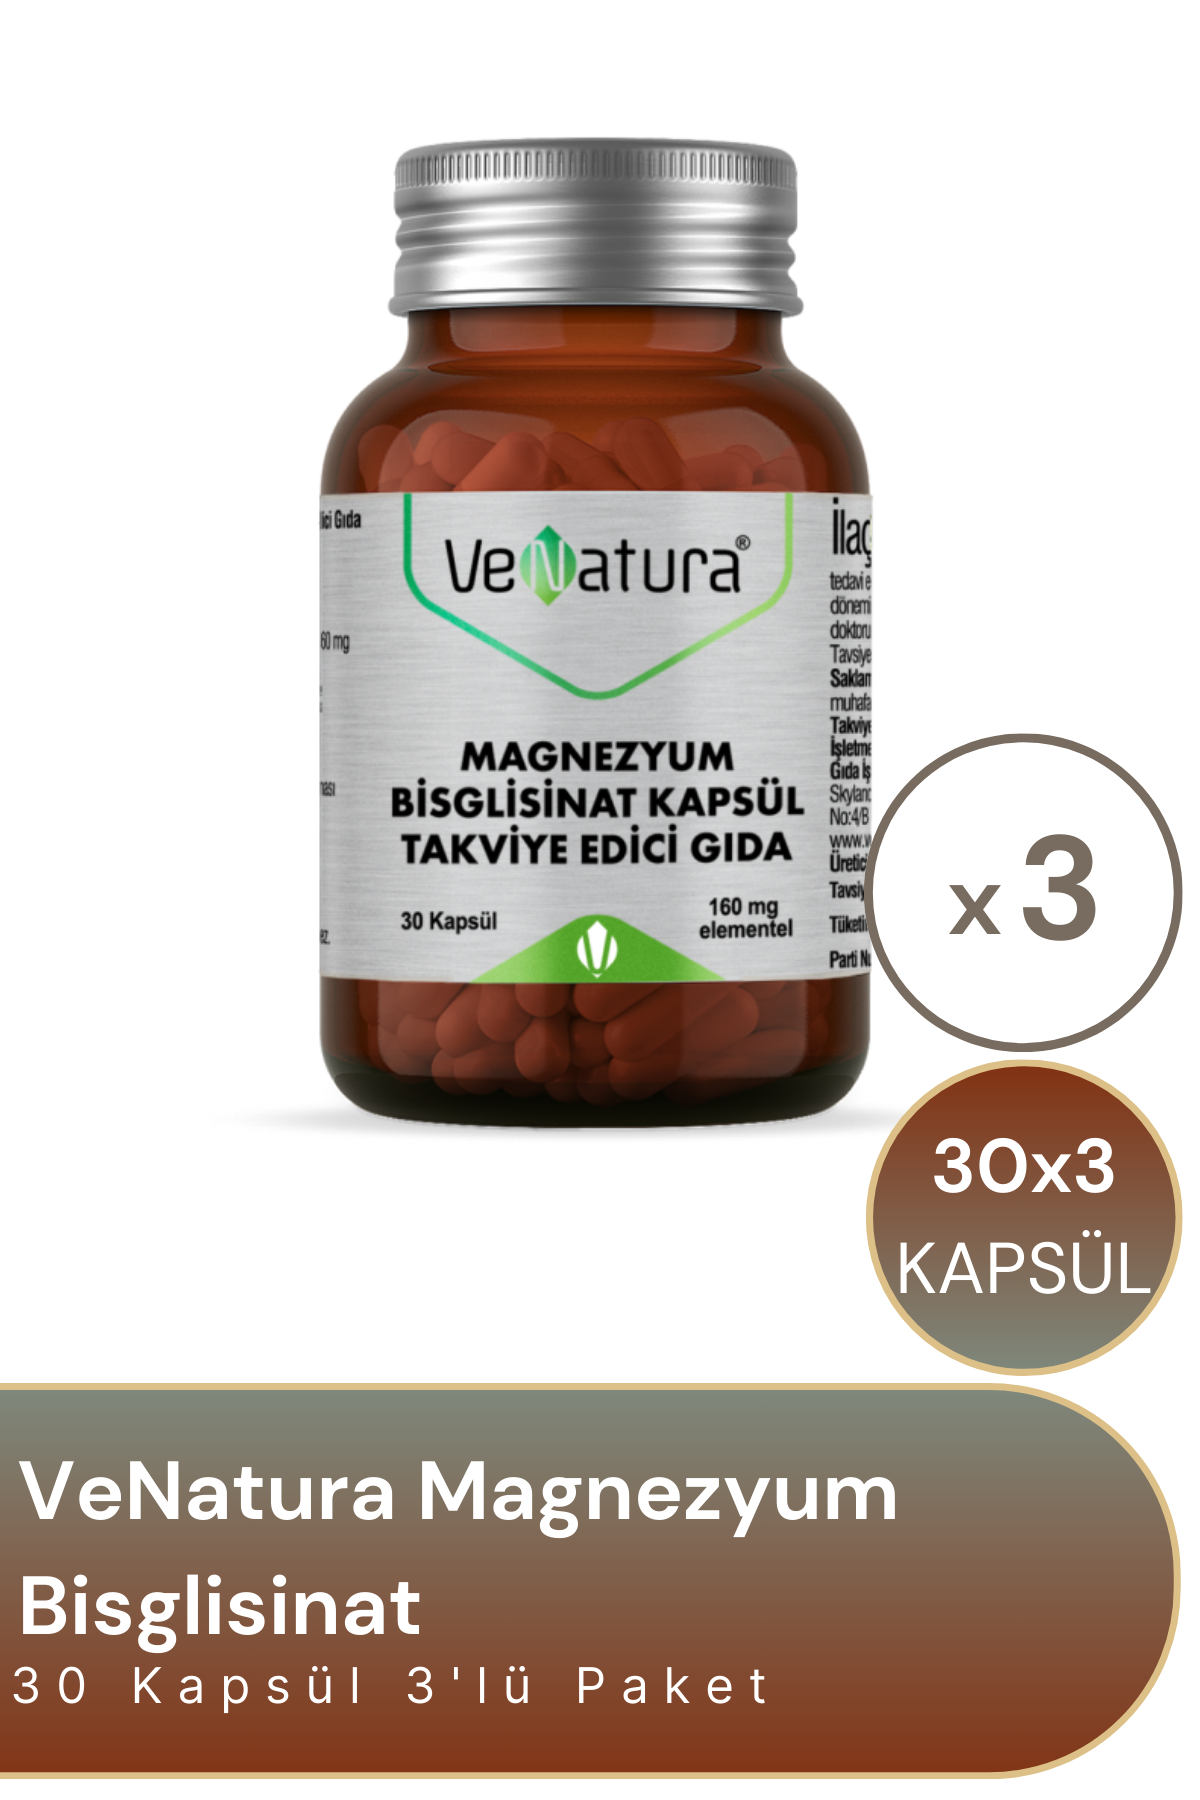 VeNatura Magnezyum Bisglisinat 160 mg 30 Kapsül 3'lü Paket